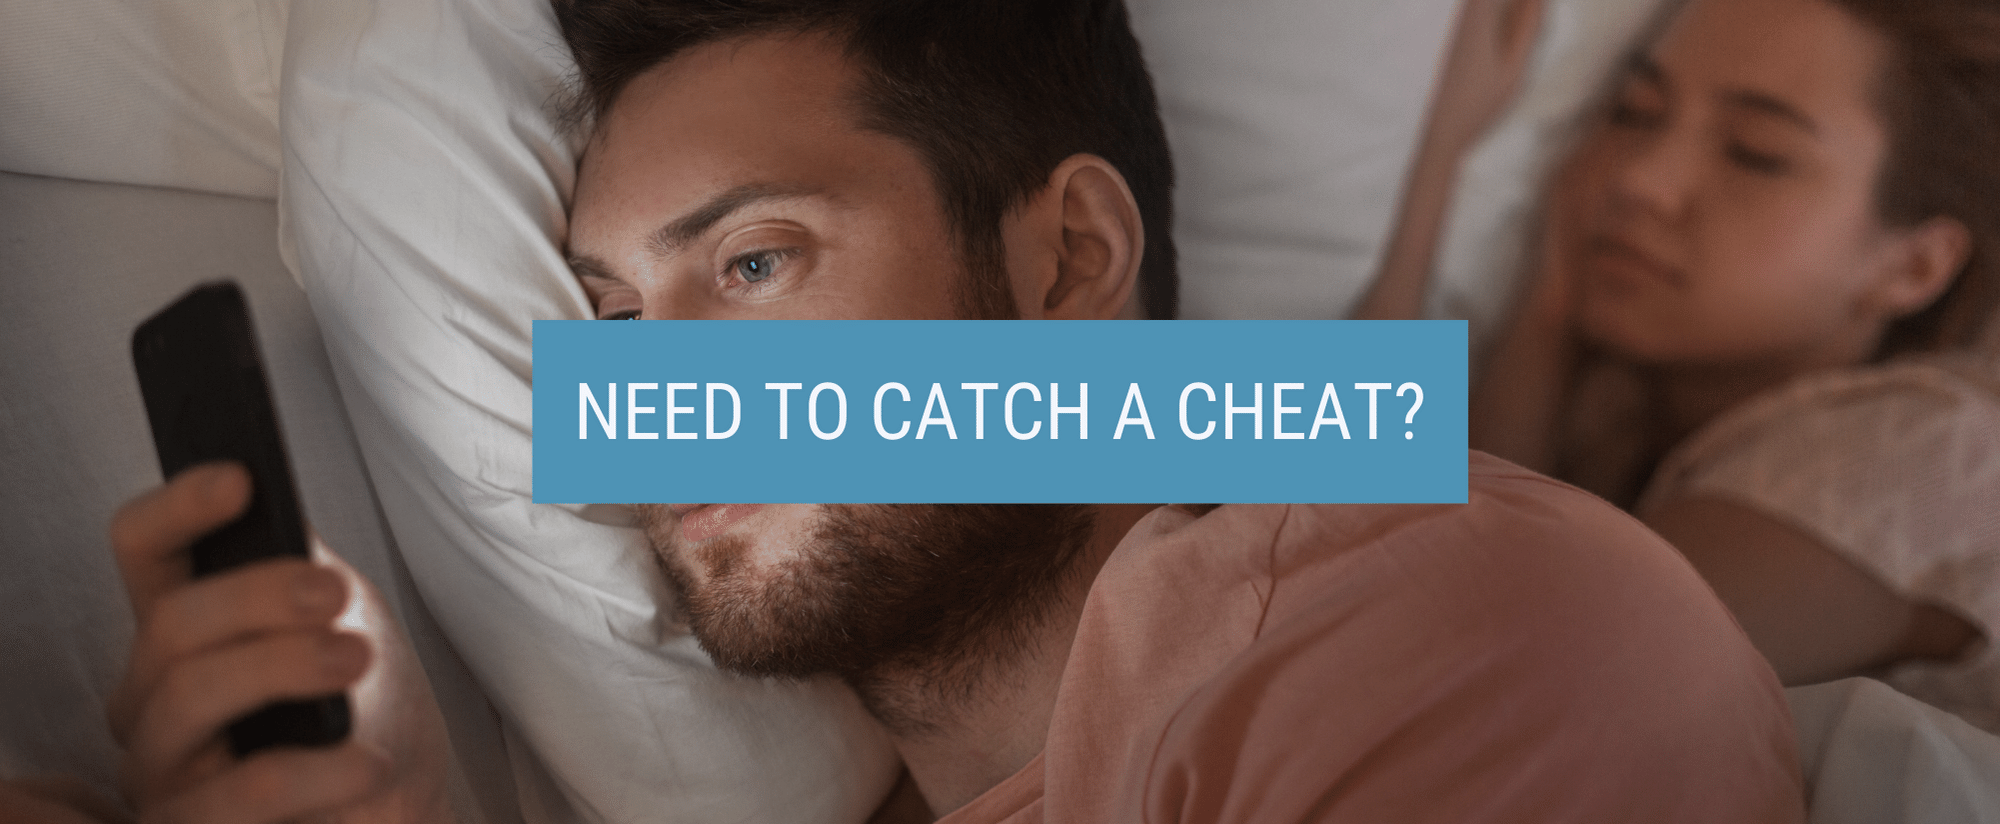 catch a cheat?